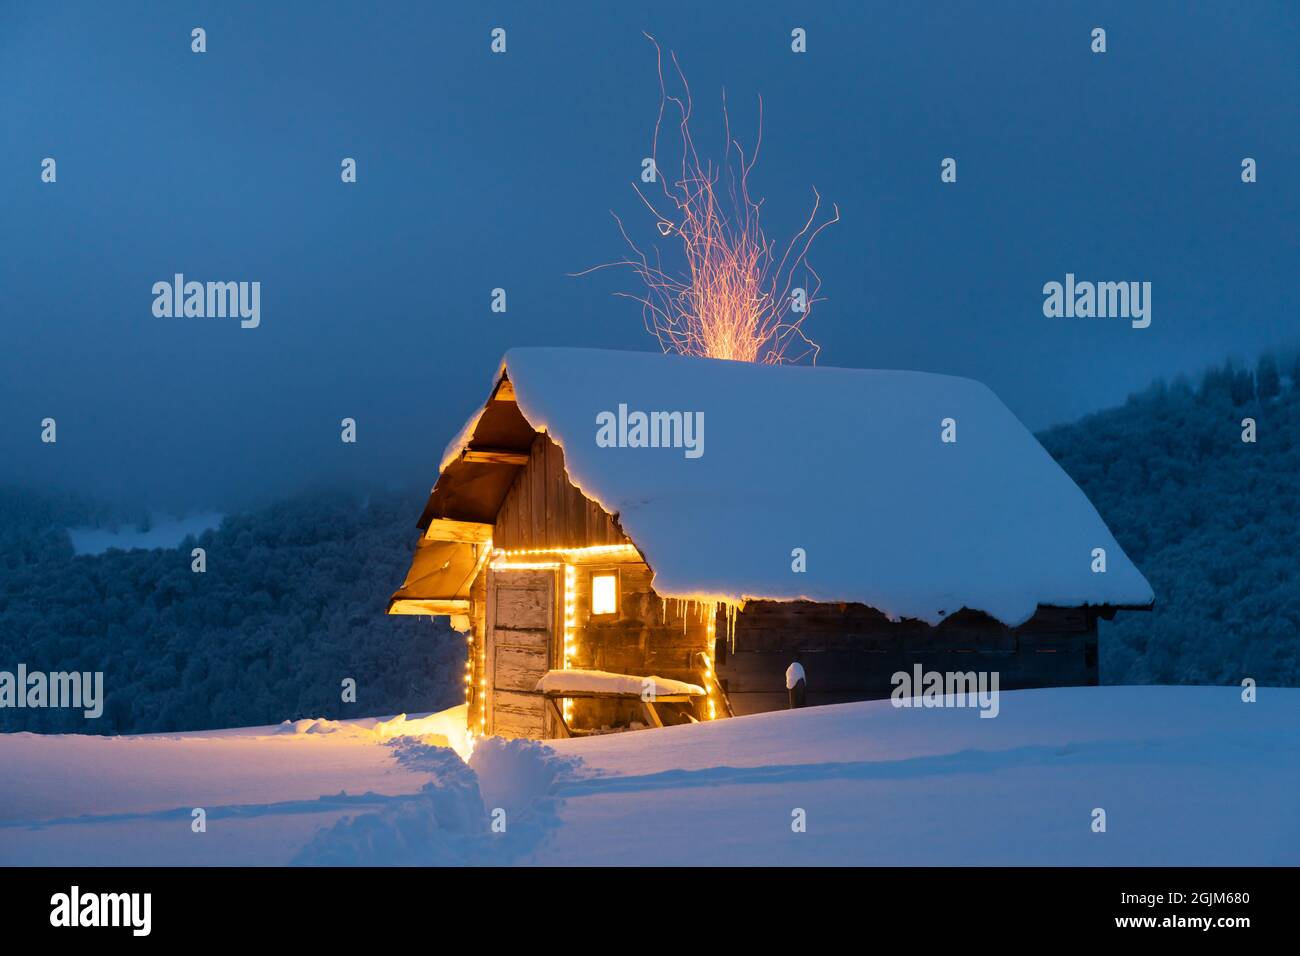 Fantastische Winterlandschaft mit glühender Holzhütte im verschneiten Wald. Feuerfunken fliegen aus dem Kamin. Weihnachtsfeiertagskonzept Stockfoto